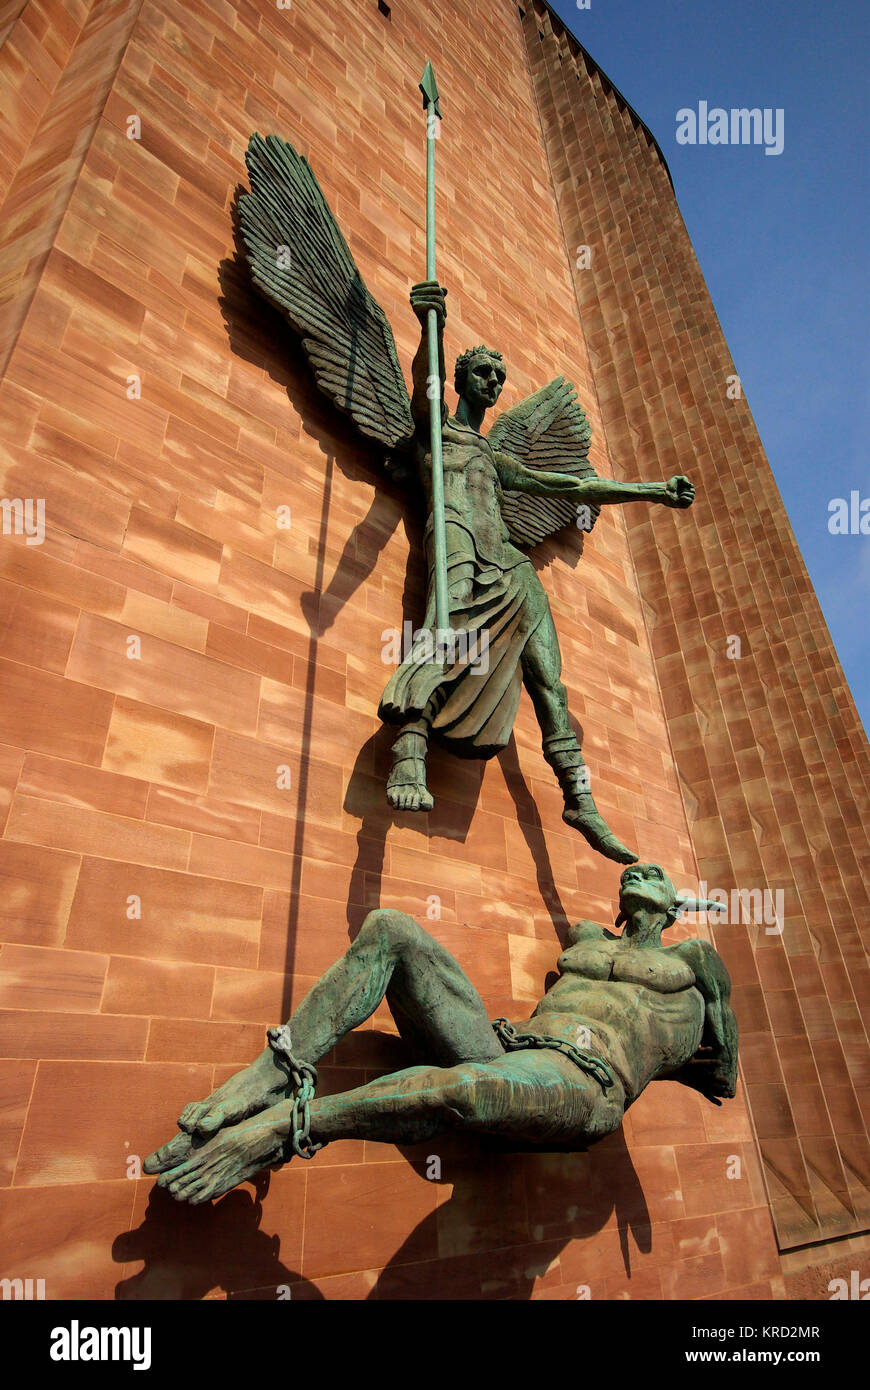 Sculpture en bronze intitulée St Michael's victoire sur le Diable, sur un mur extérieur de la cathédrale de Coventry. Il a été sculpté en 1958 par Sir Jacob Epstein, pour célébrer la reconstruction de Coventry, et la victoire sur le mal de la Seconde Guerre mondiale. Date : 2011 Banque D'Images